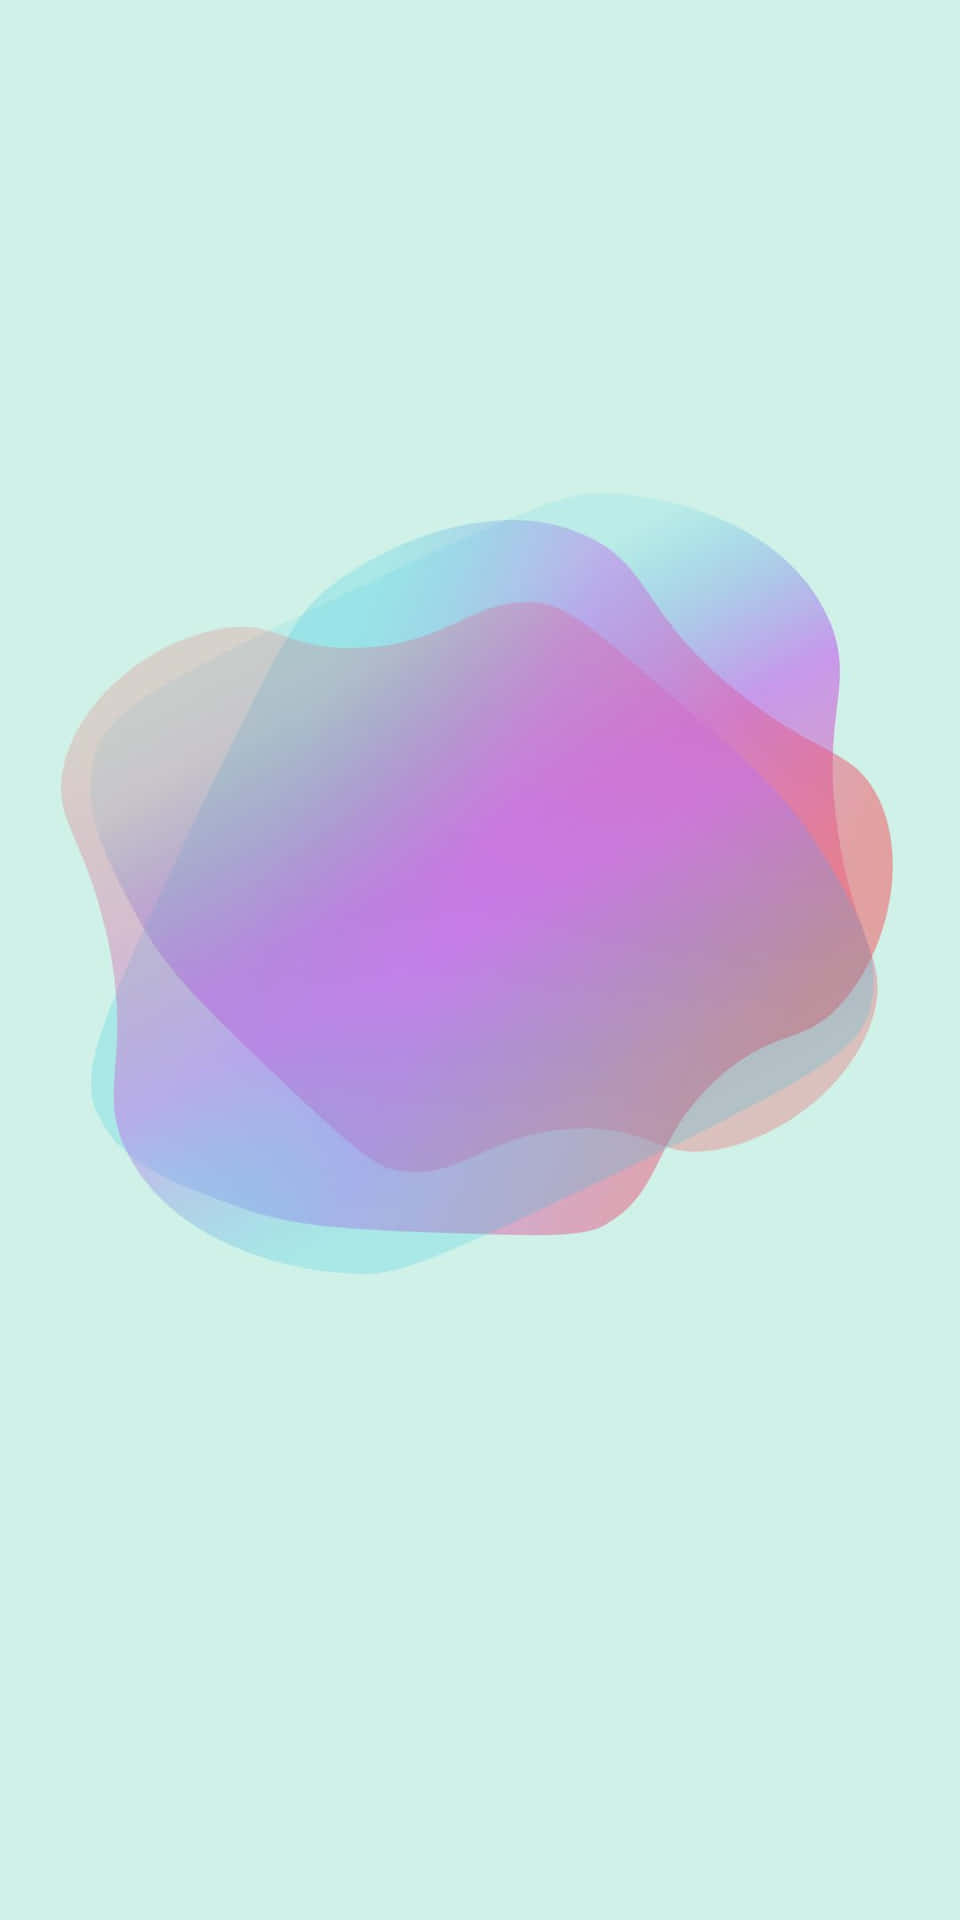 Pixel 3 Baggrund Pink og Blå Gradient Overlay.